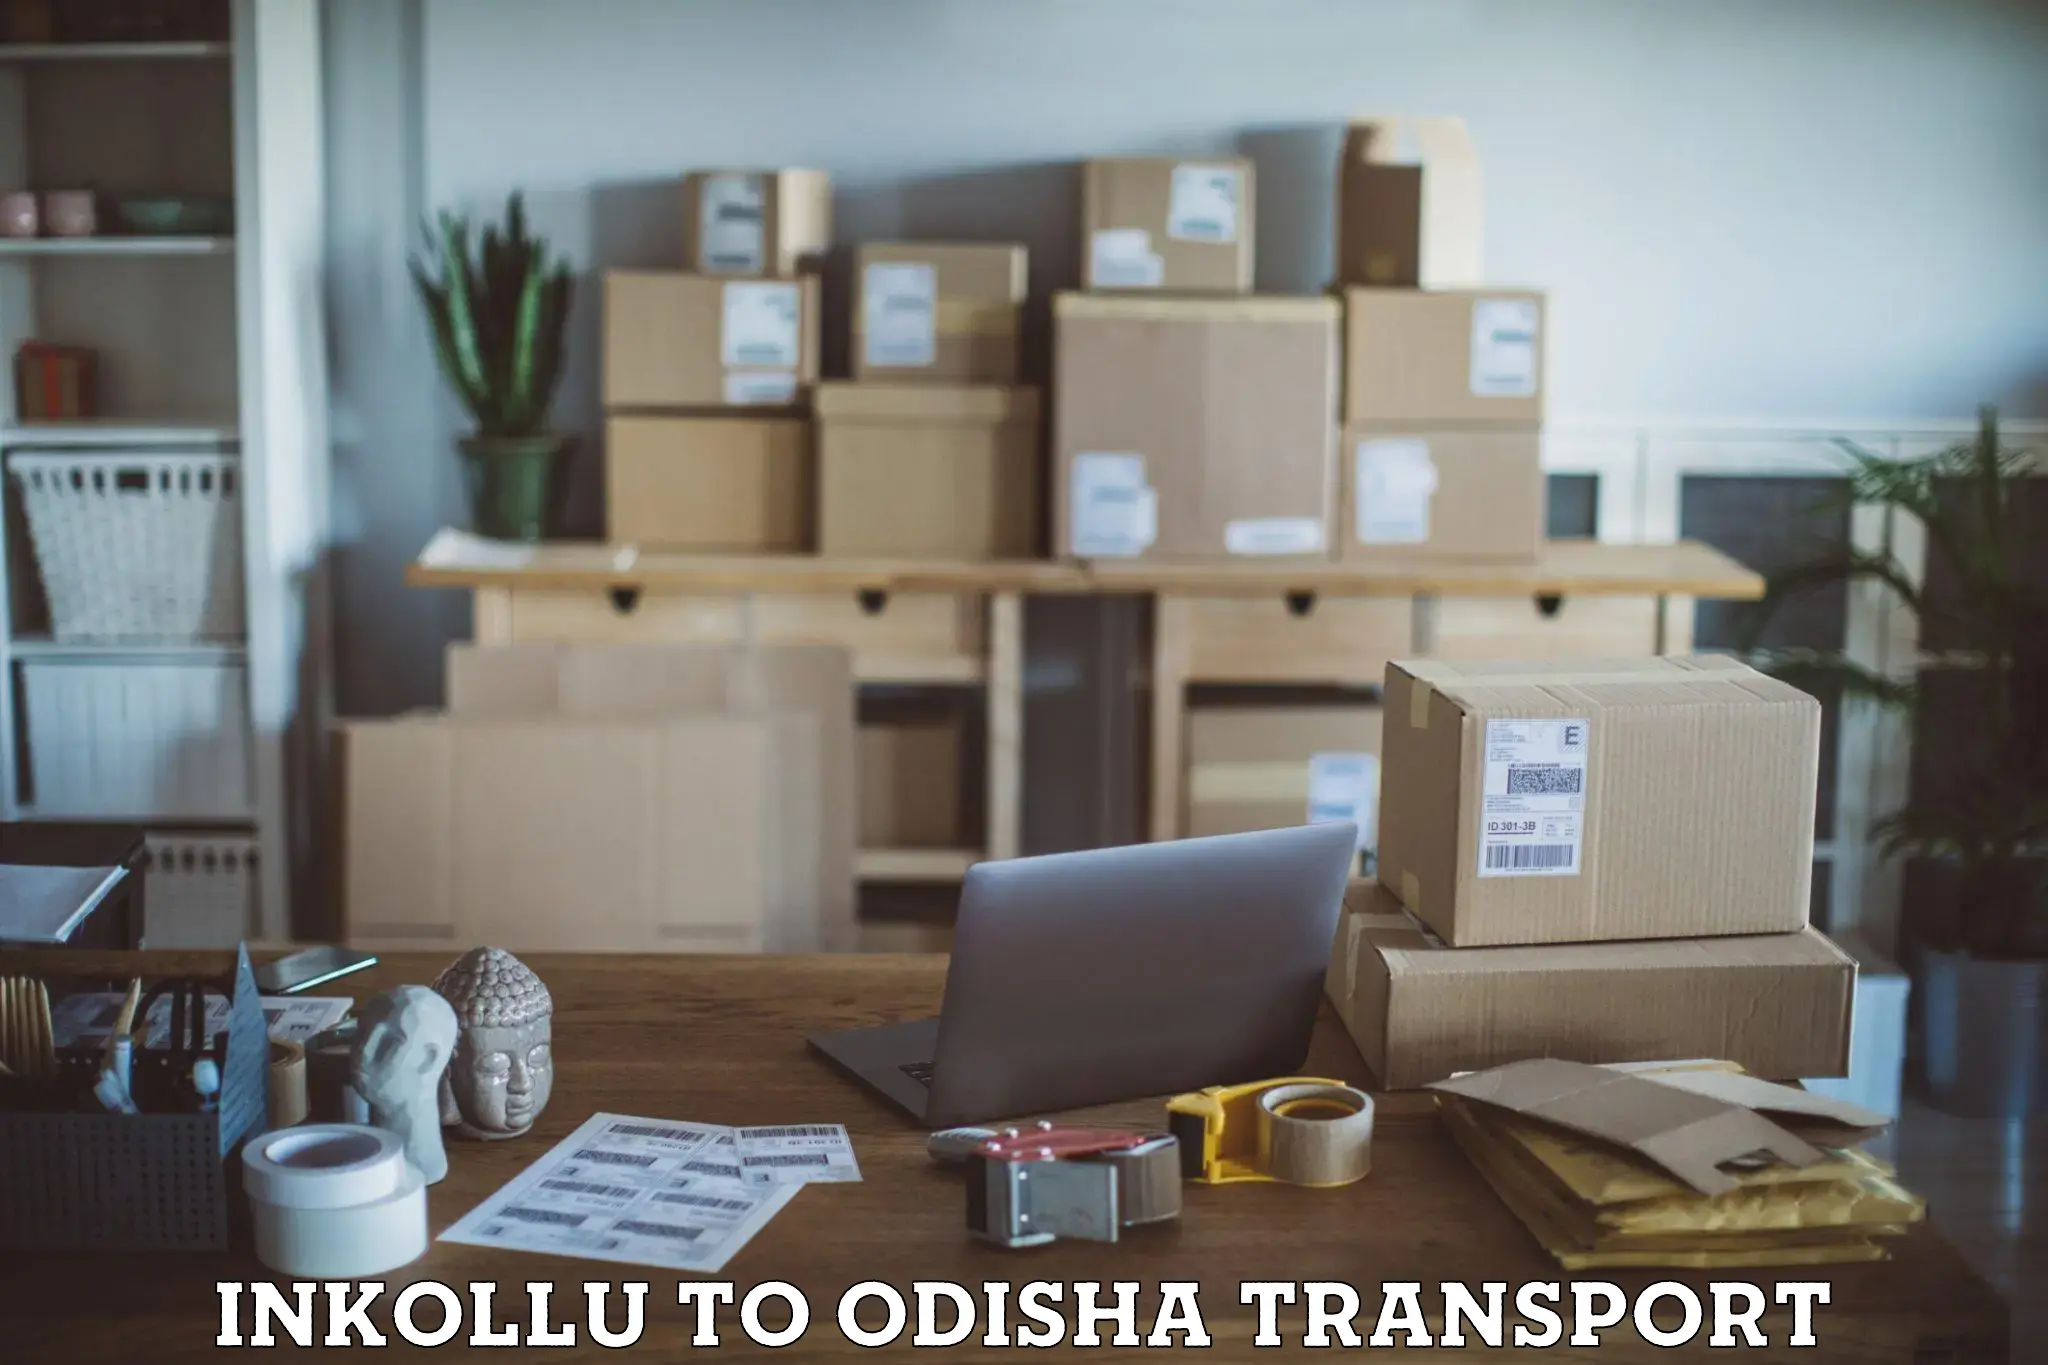 Express transport services Inkollu to Odisha